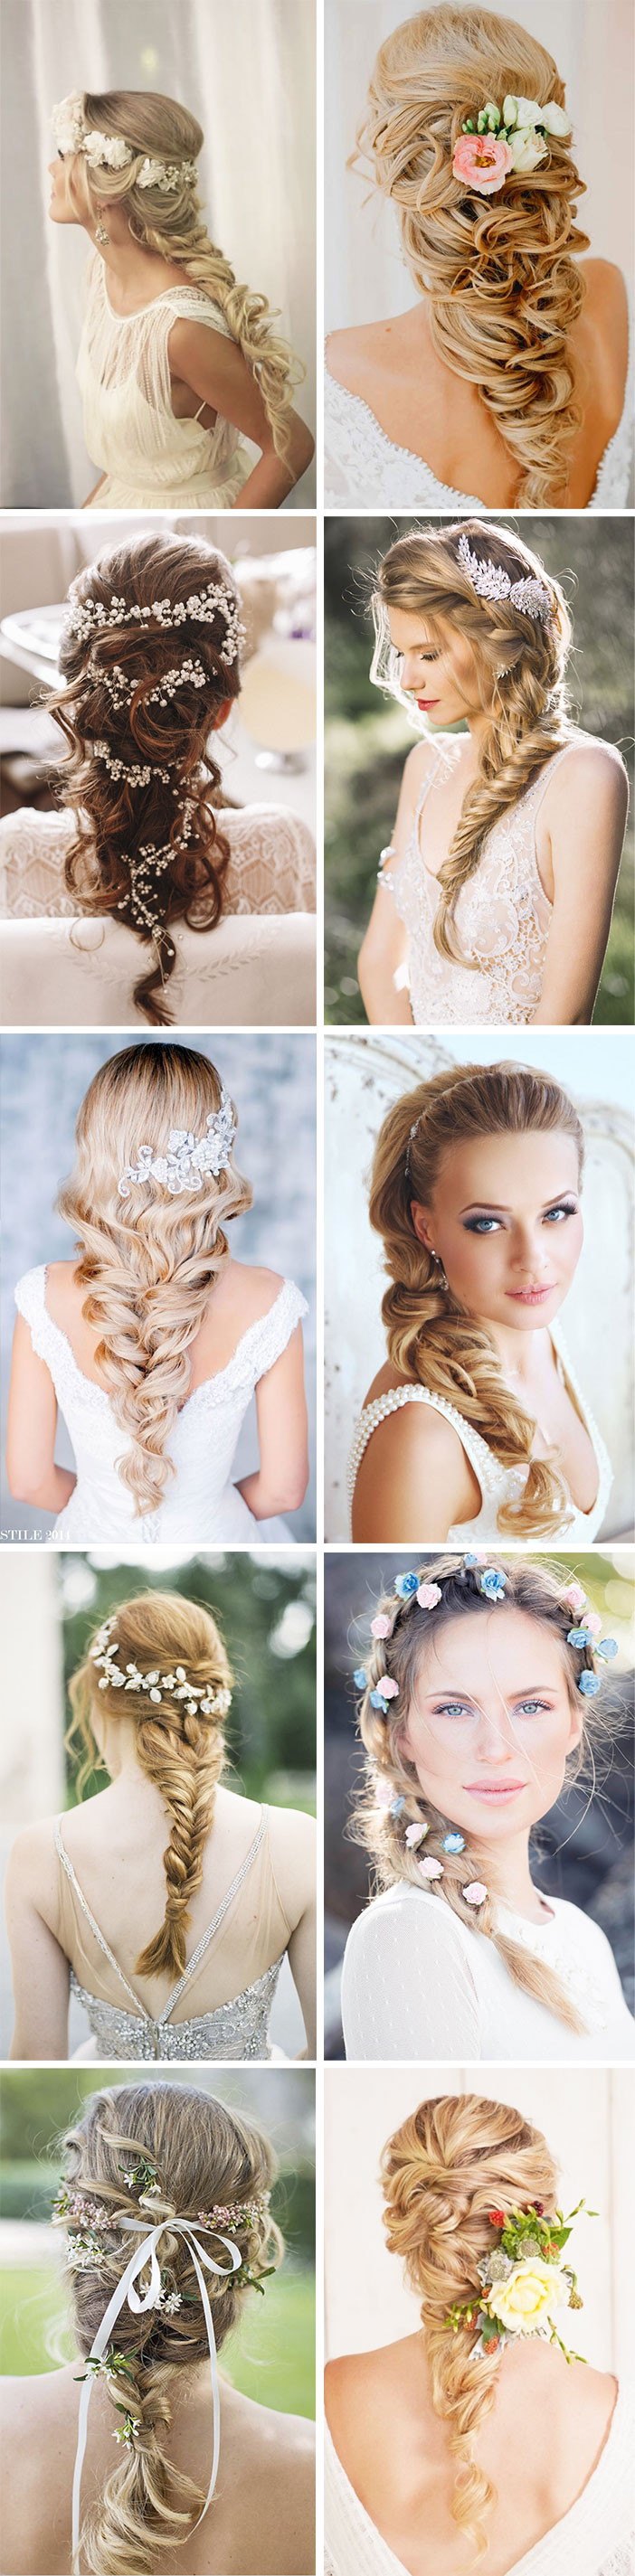 Ideias de penteados com tranças para noivas